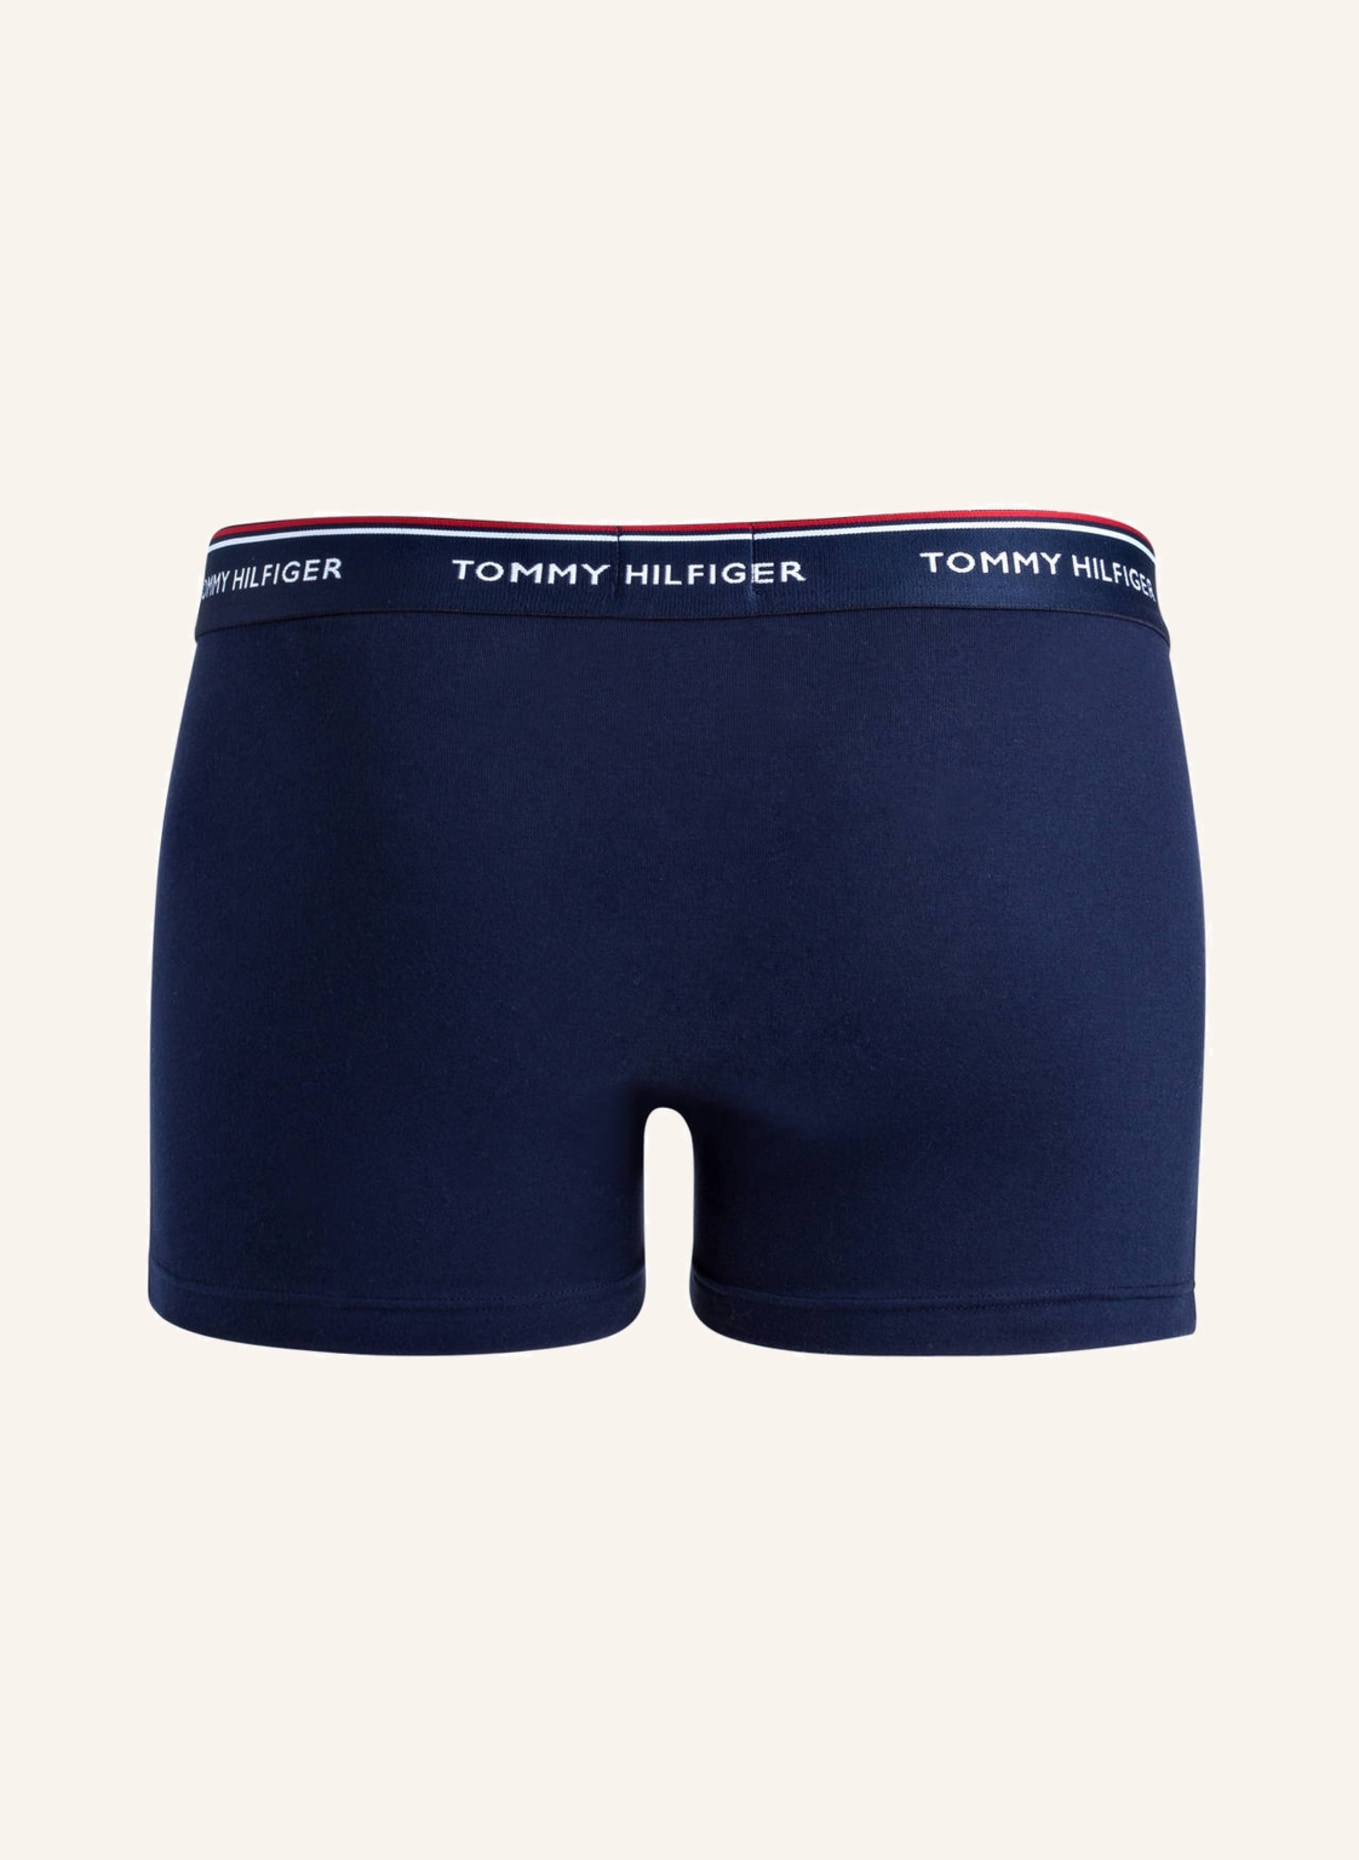 TOMMY HILFIGER 3er-Pack Boxershorts, Farbe: NAVY (Bild 2)